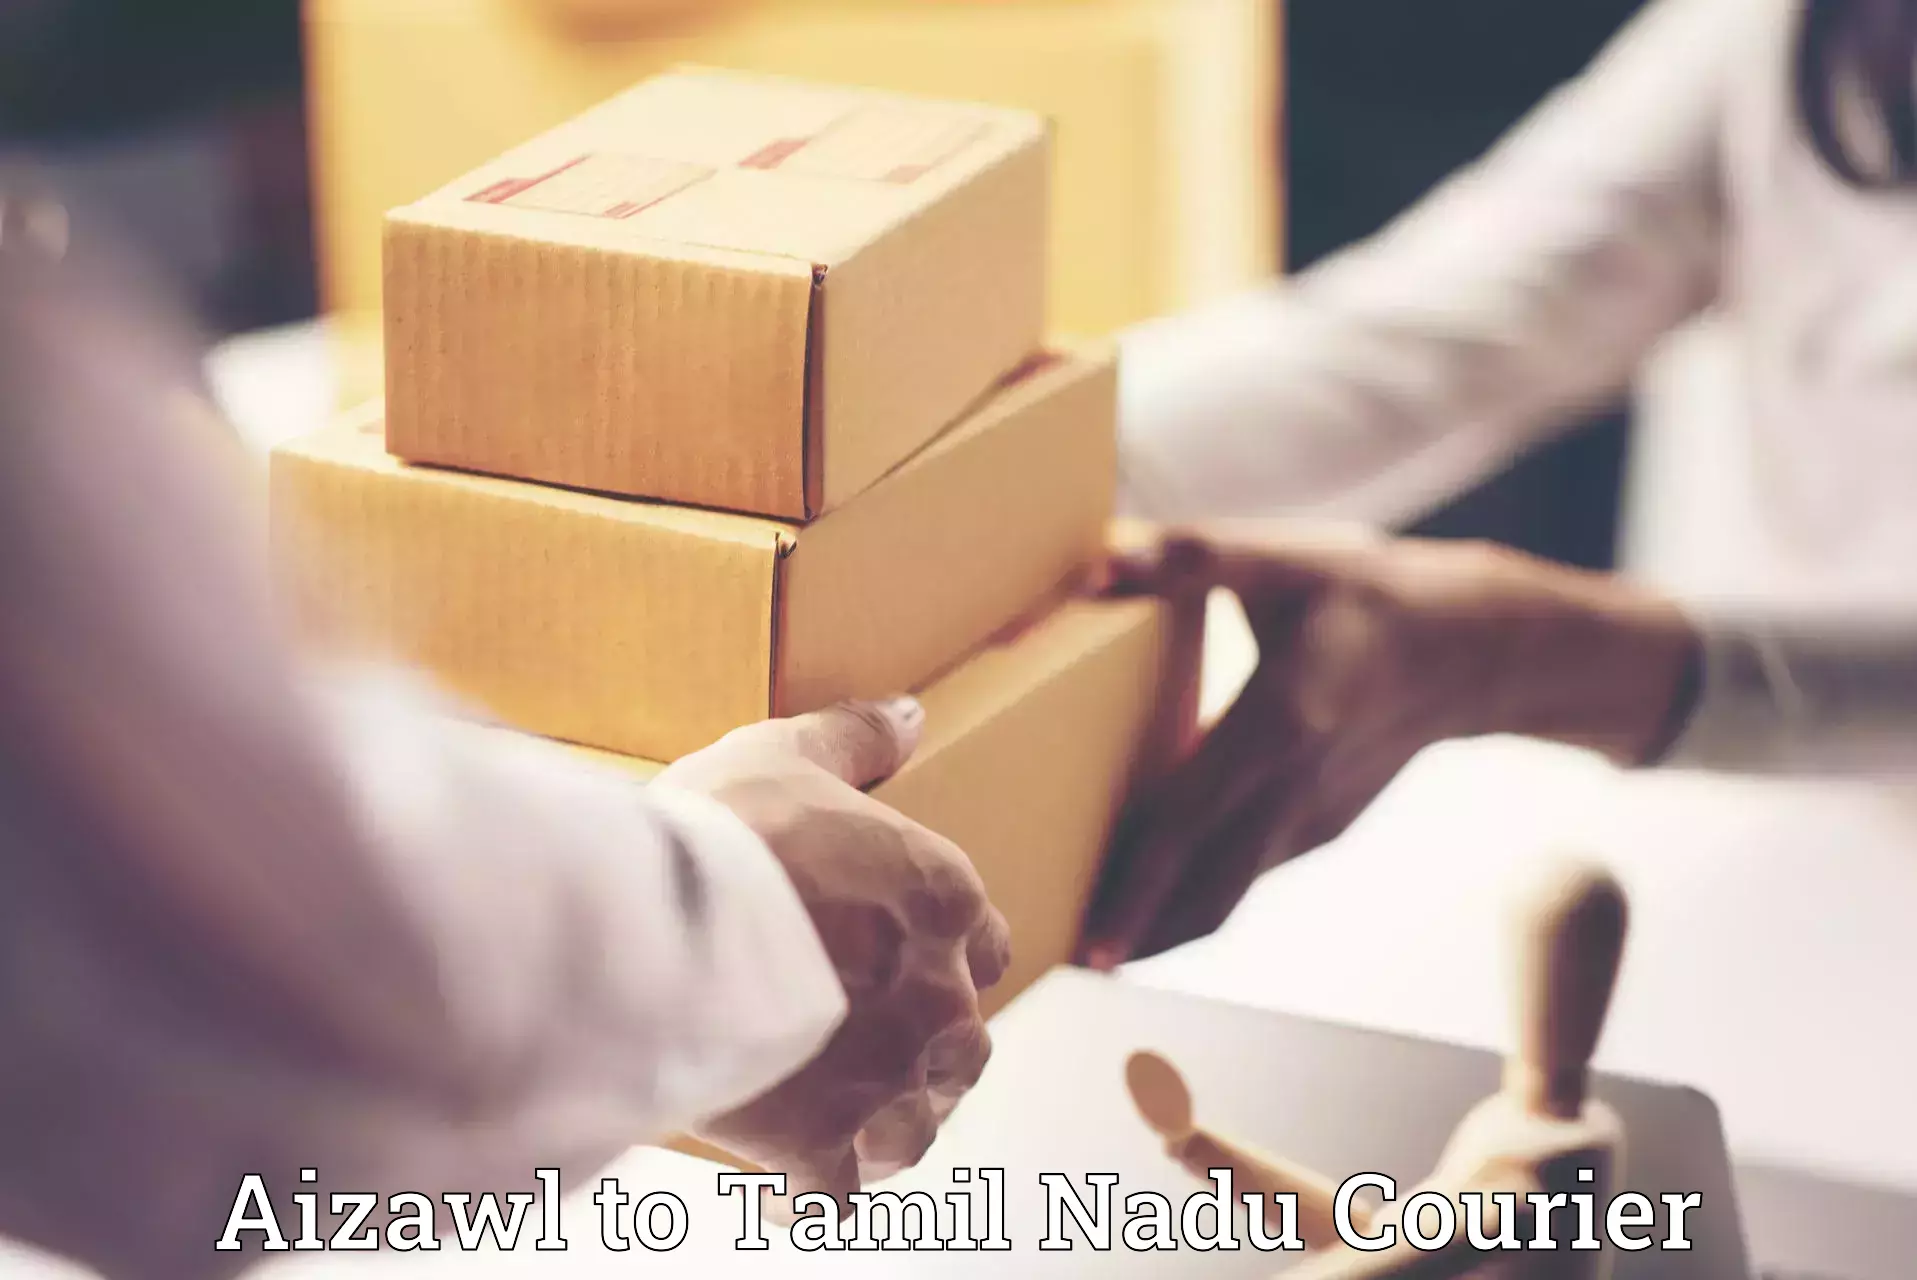 Furniture transport professionals Aizawl to Tamil Nadu